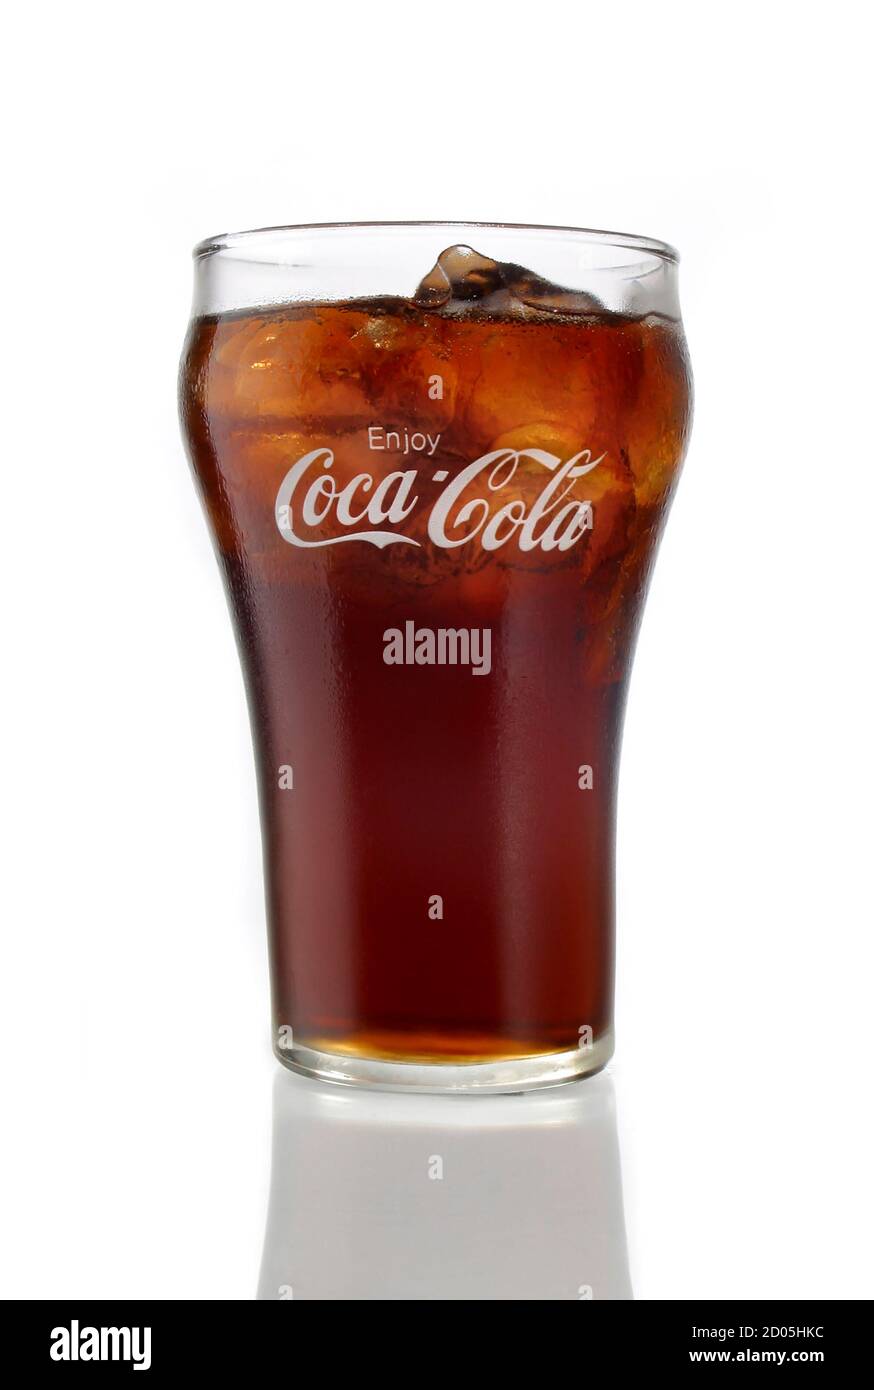 Coca cola products Imágenes vectoriales de stock - Alamy